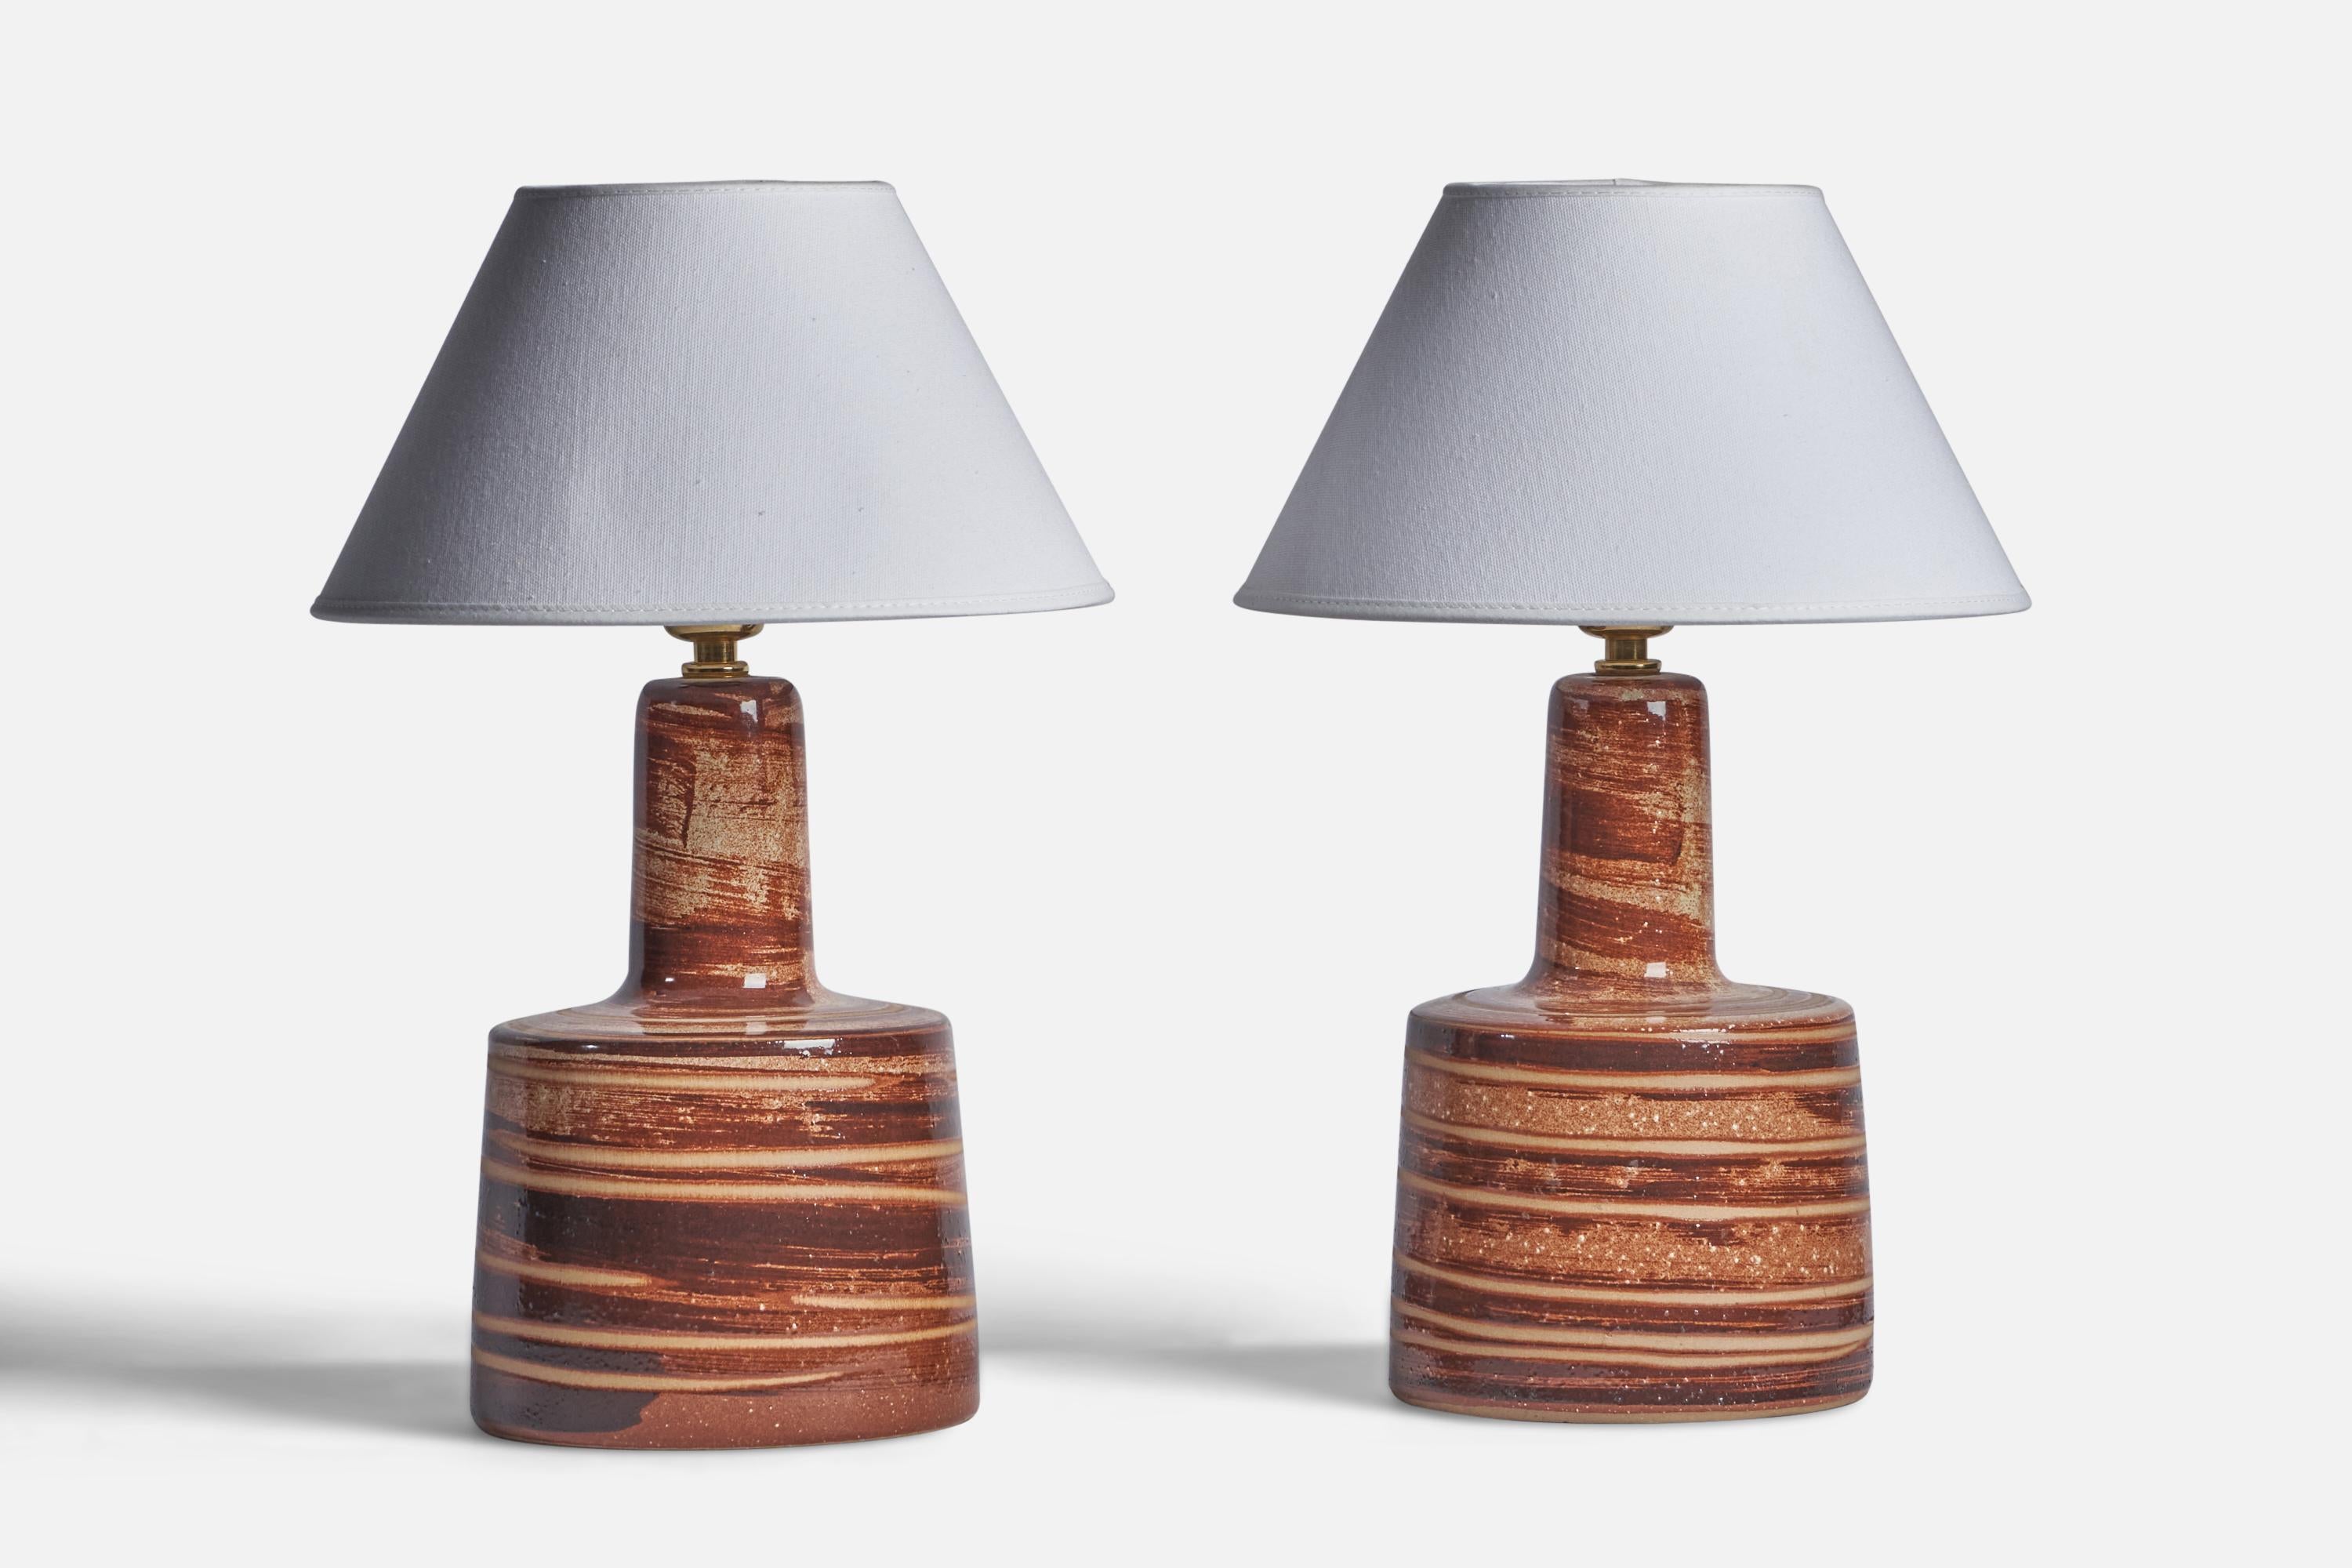 Paire de lampes de table en céramique beige et émaillée brune conçues par Jane & Gordon Martz et produites par Marshall Studios, États-Unis, années 1960.

Dimensions de la lampe (pouces) : 12.15